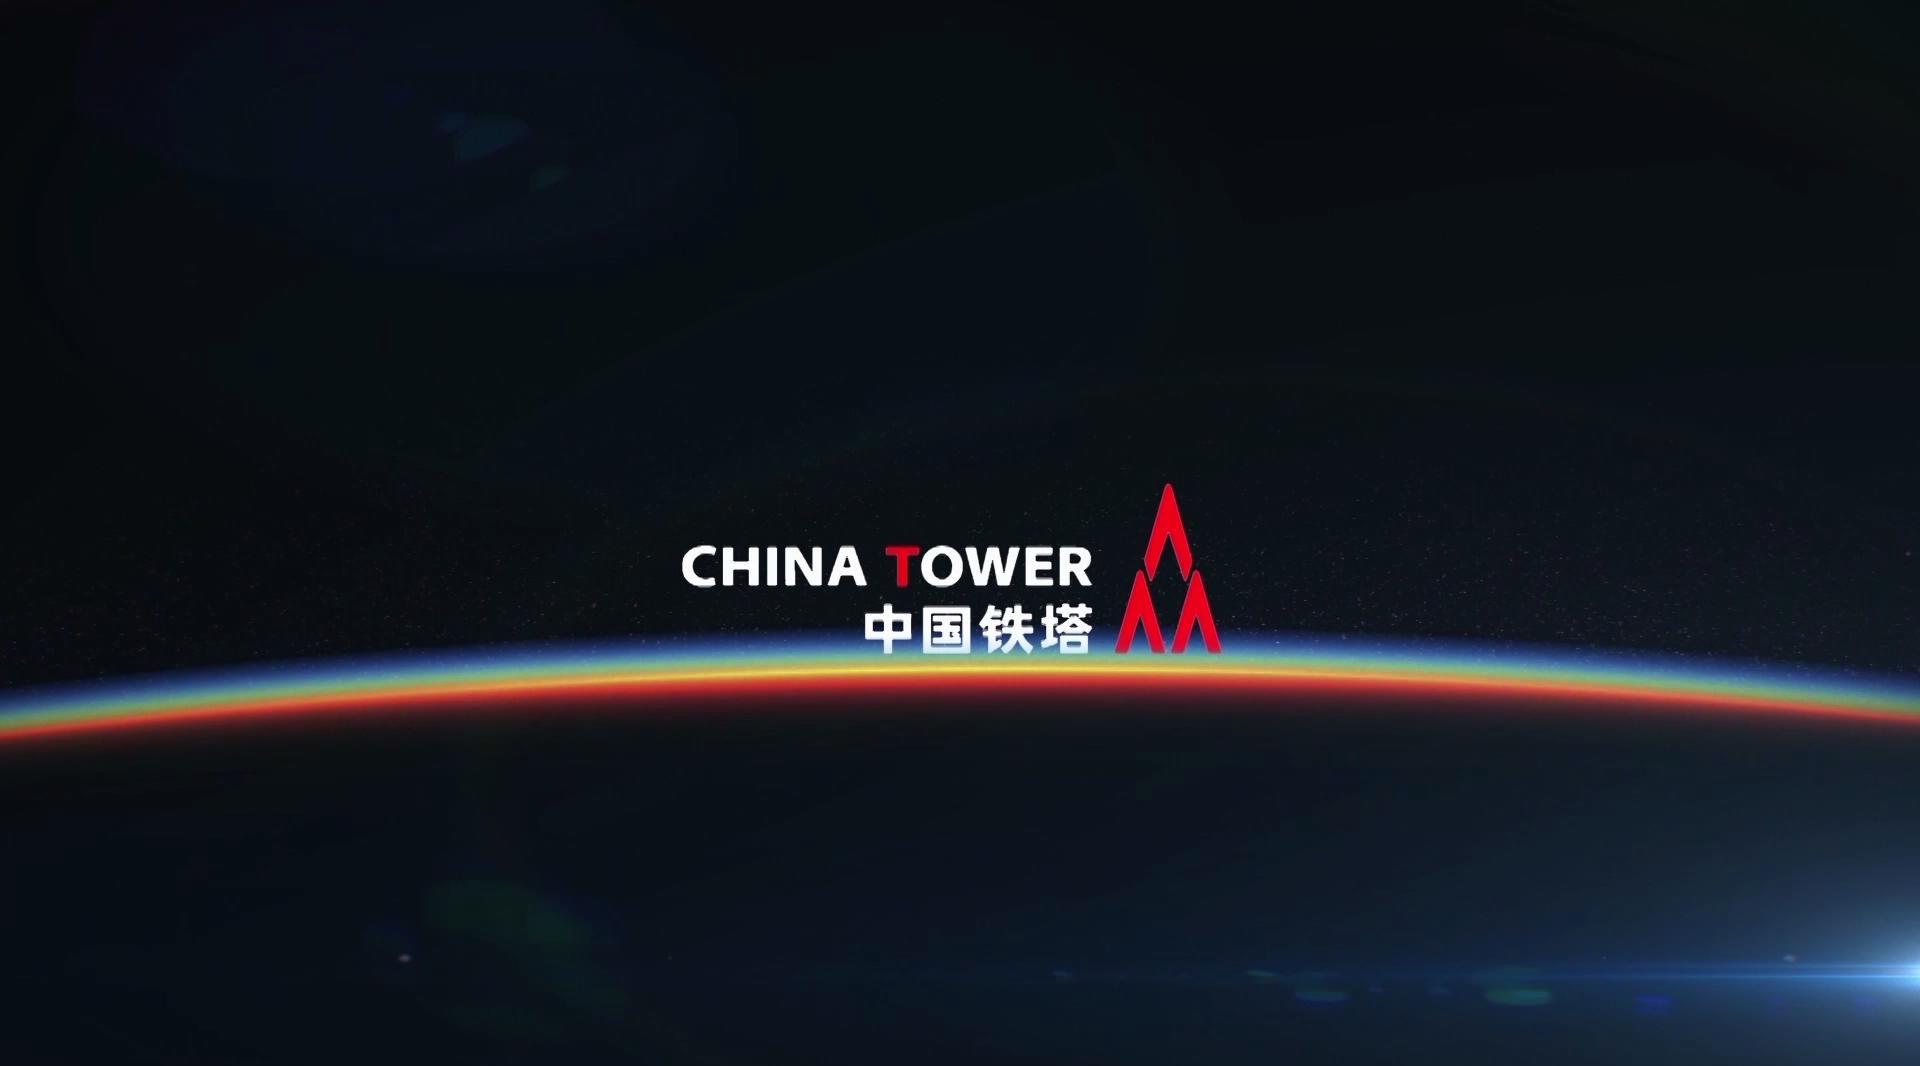 华夏能源网获悉,6月5日,中国铁塔股份有限公司(以下简称:中国铁塔)